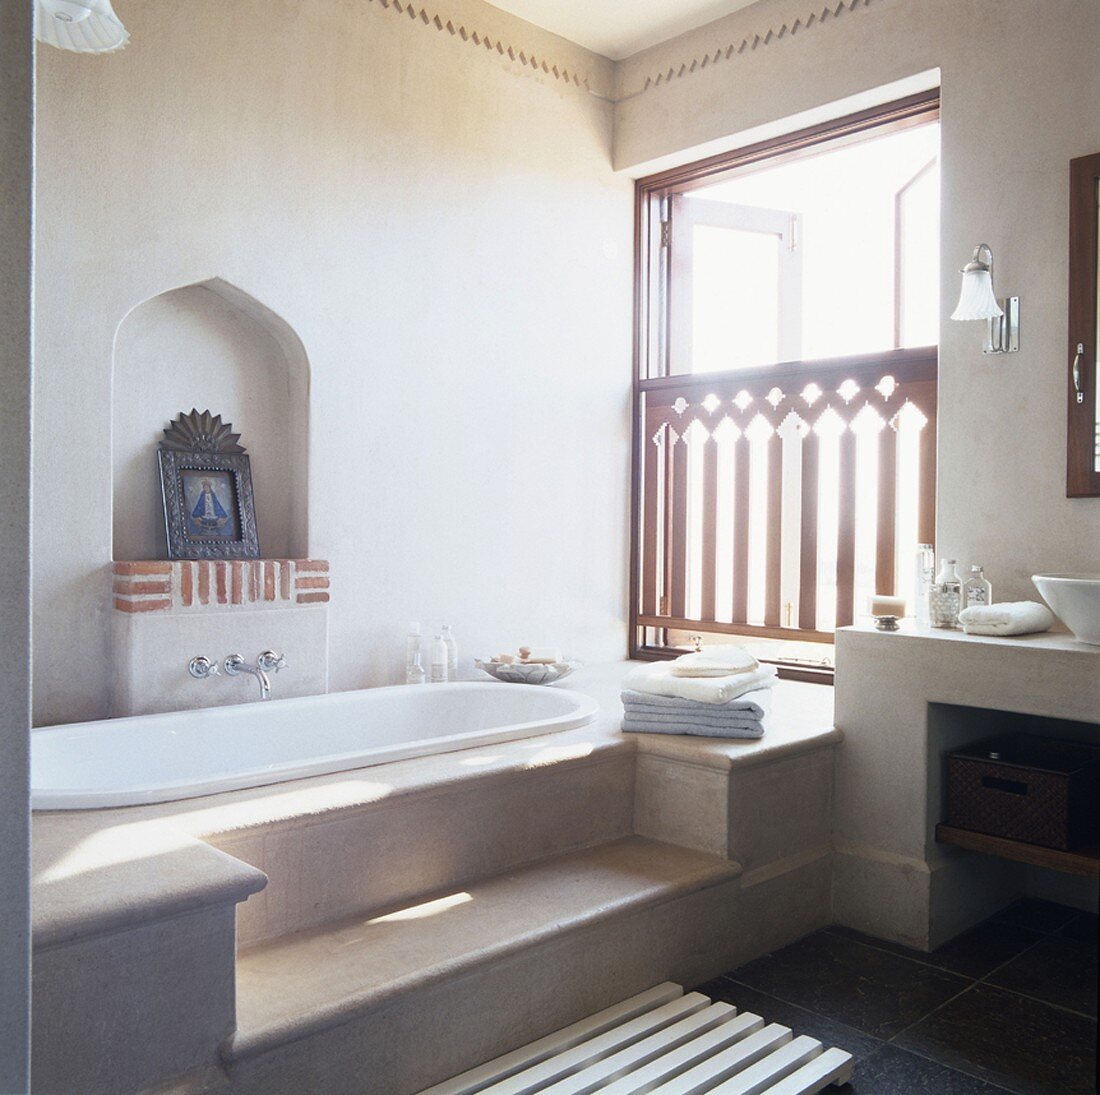 Ein Badezimmer im orientalischen Stil mit Stufenpodest vor der Badewanne